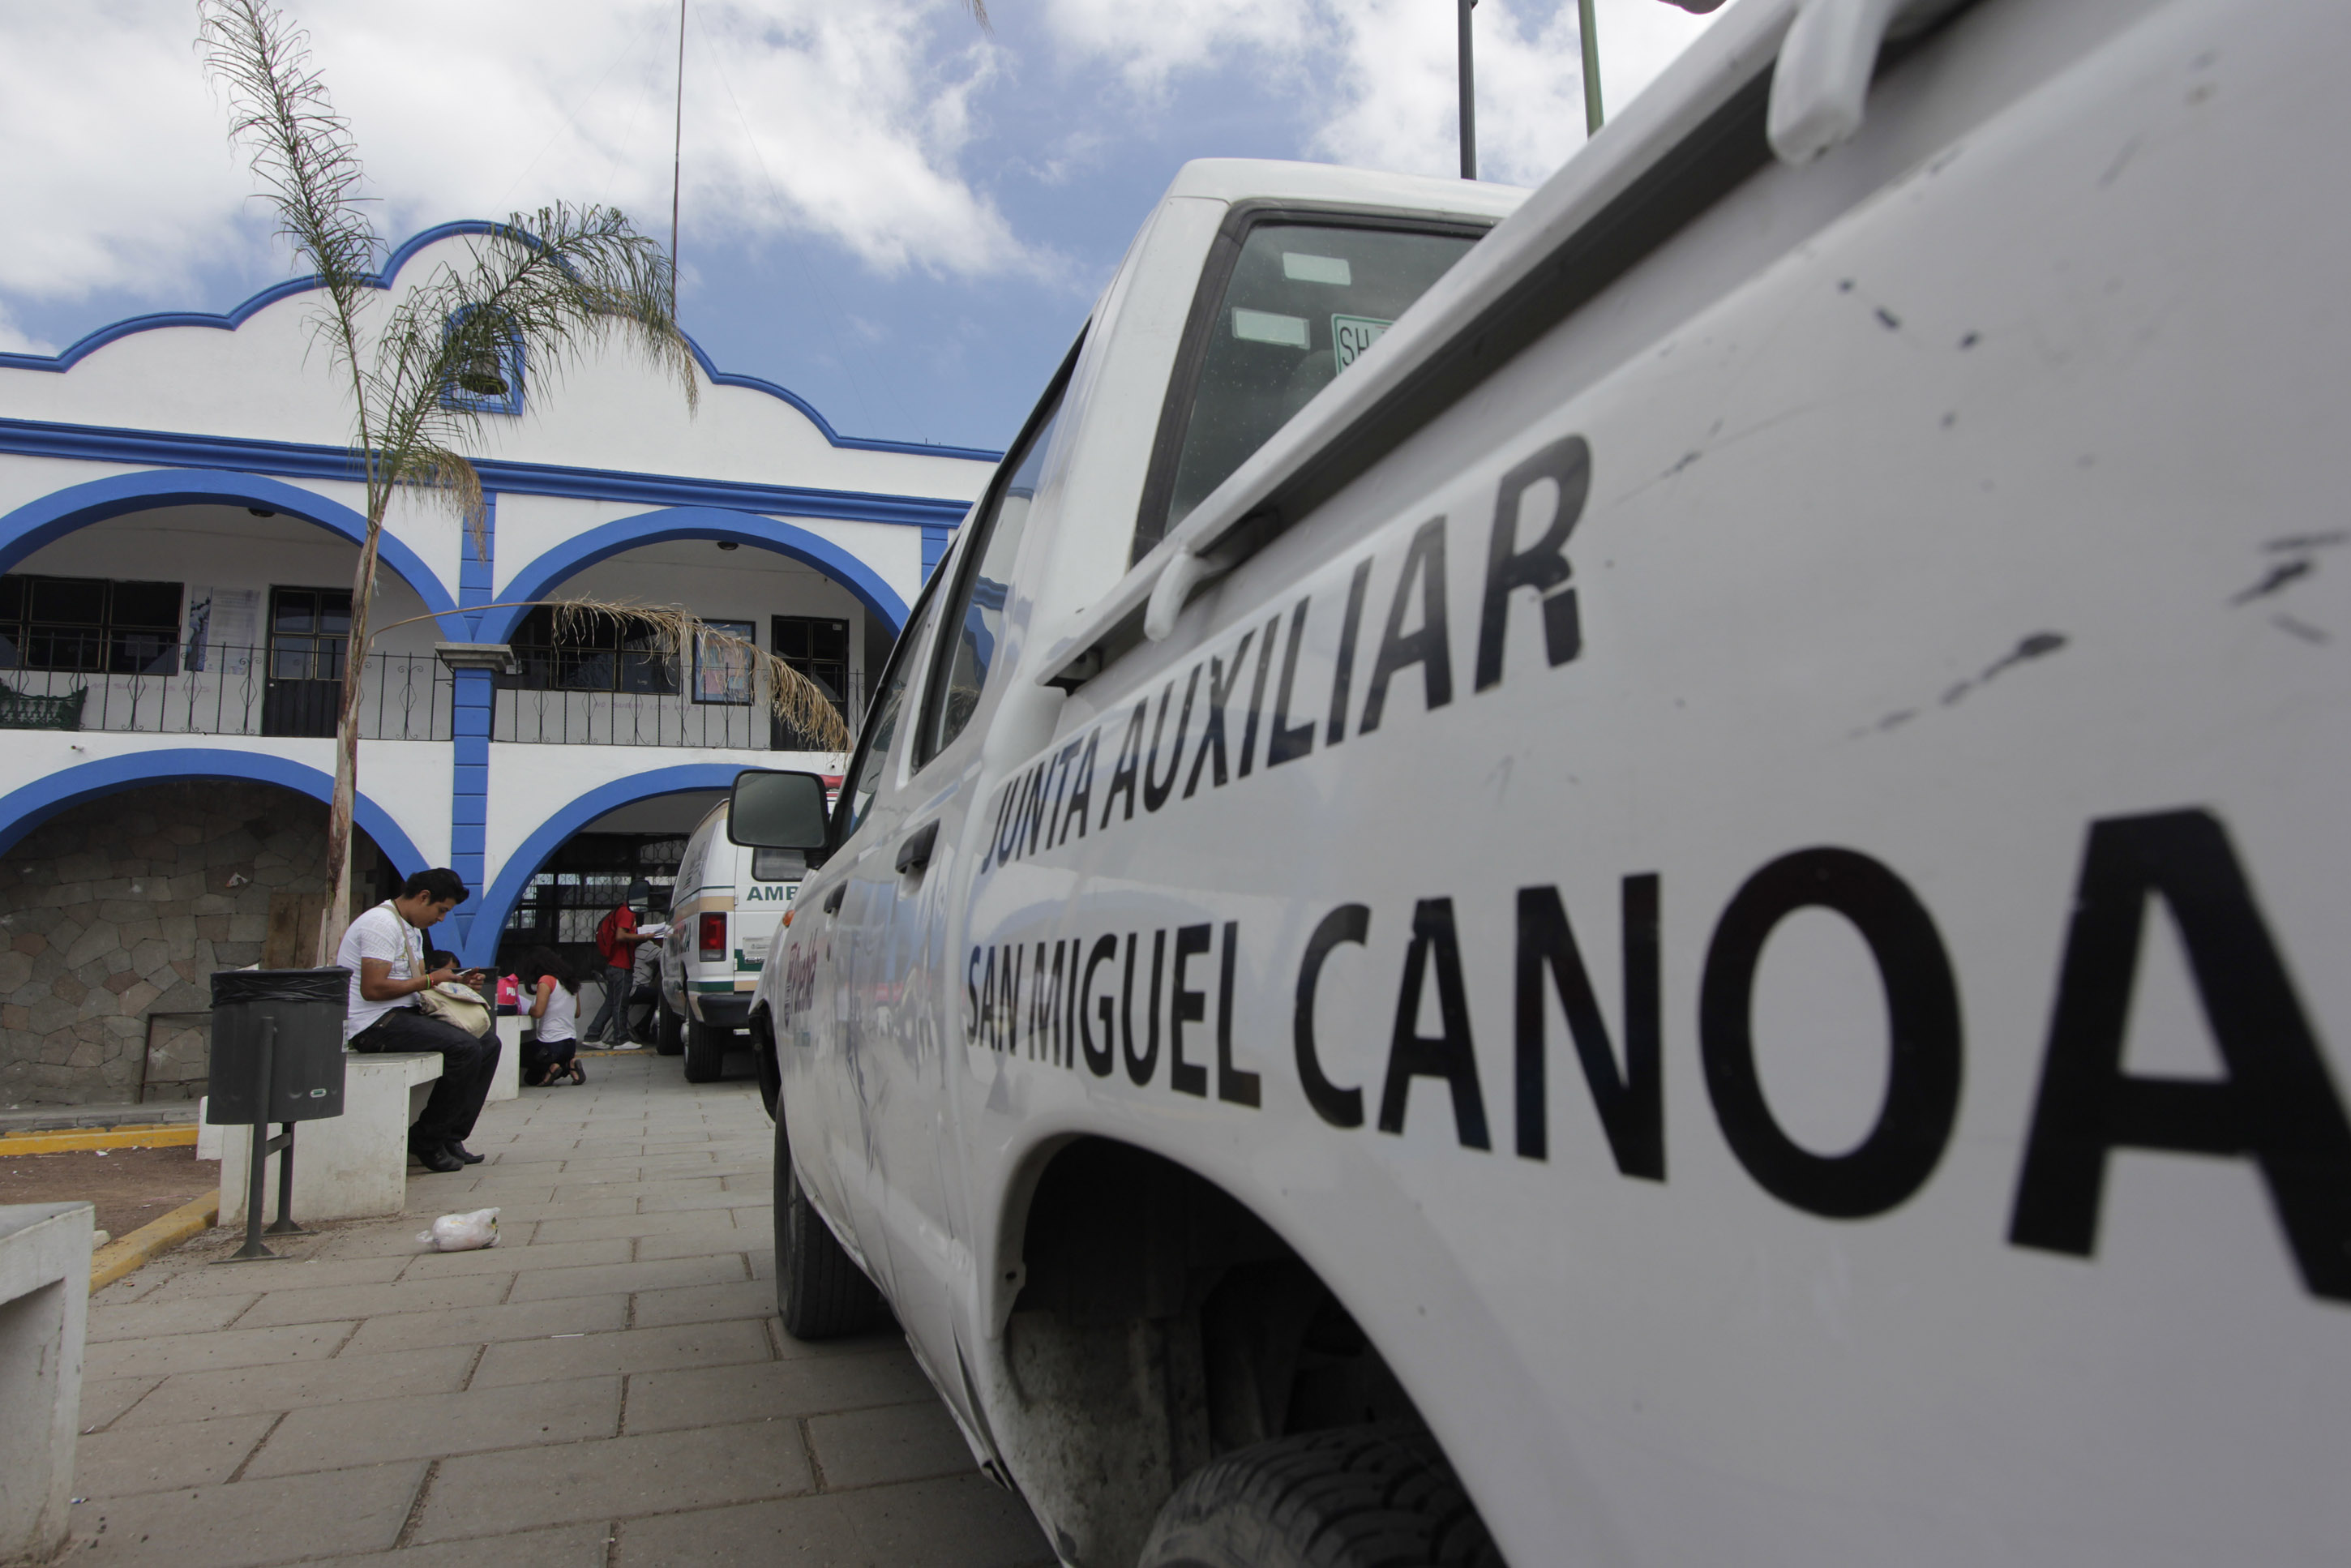 Reportan explosión en Canoa, habría 3 menores heridos